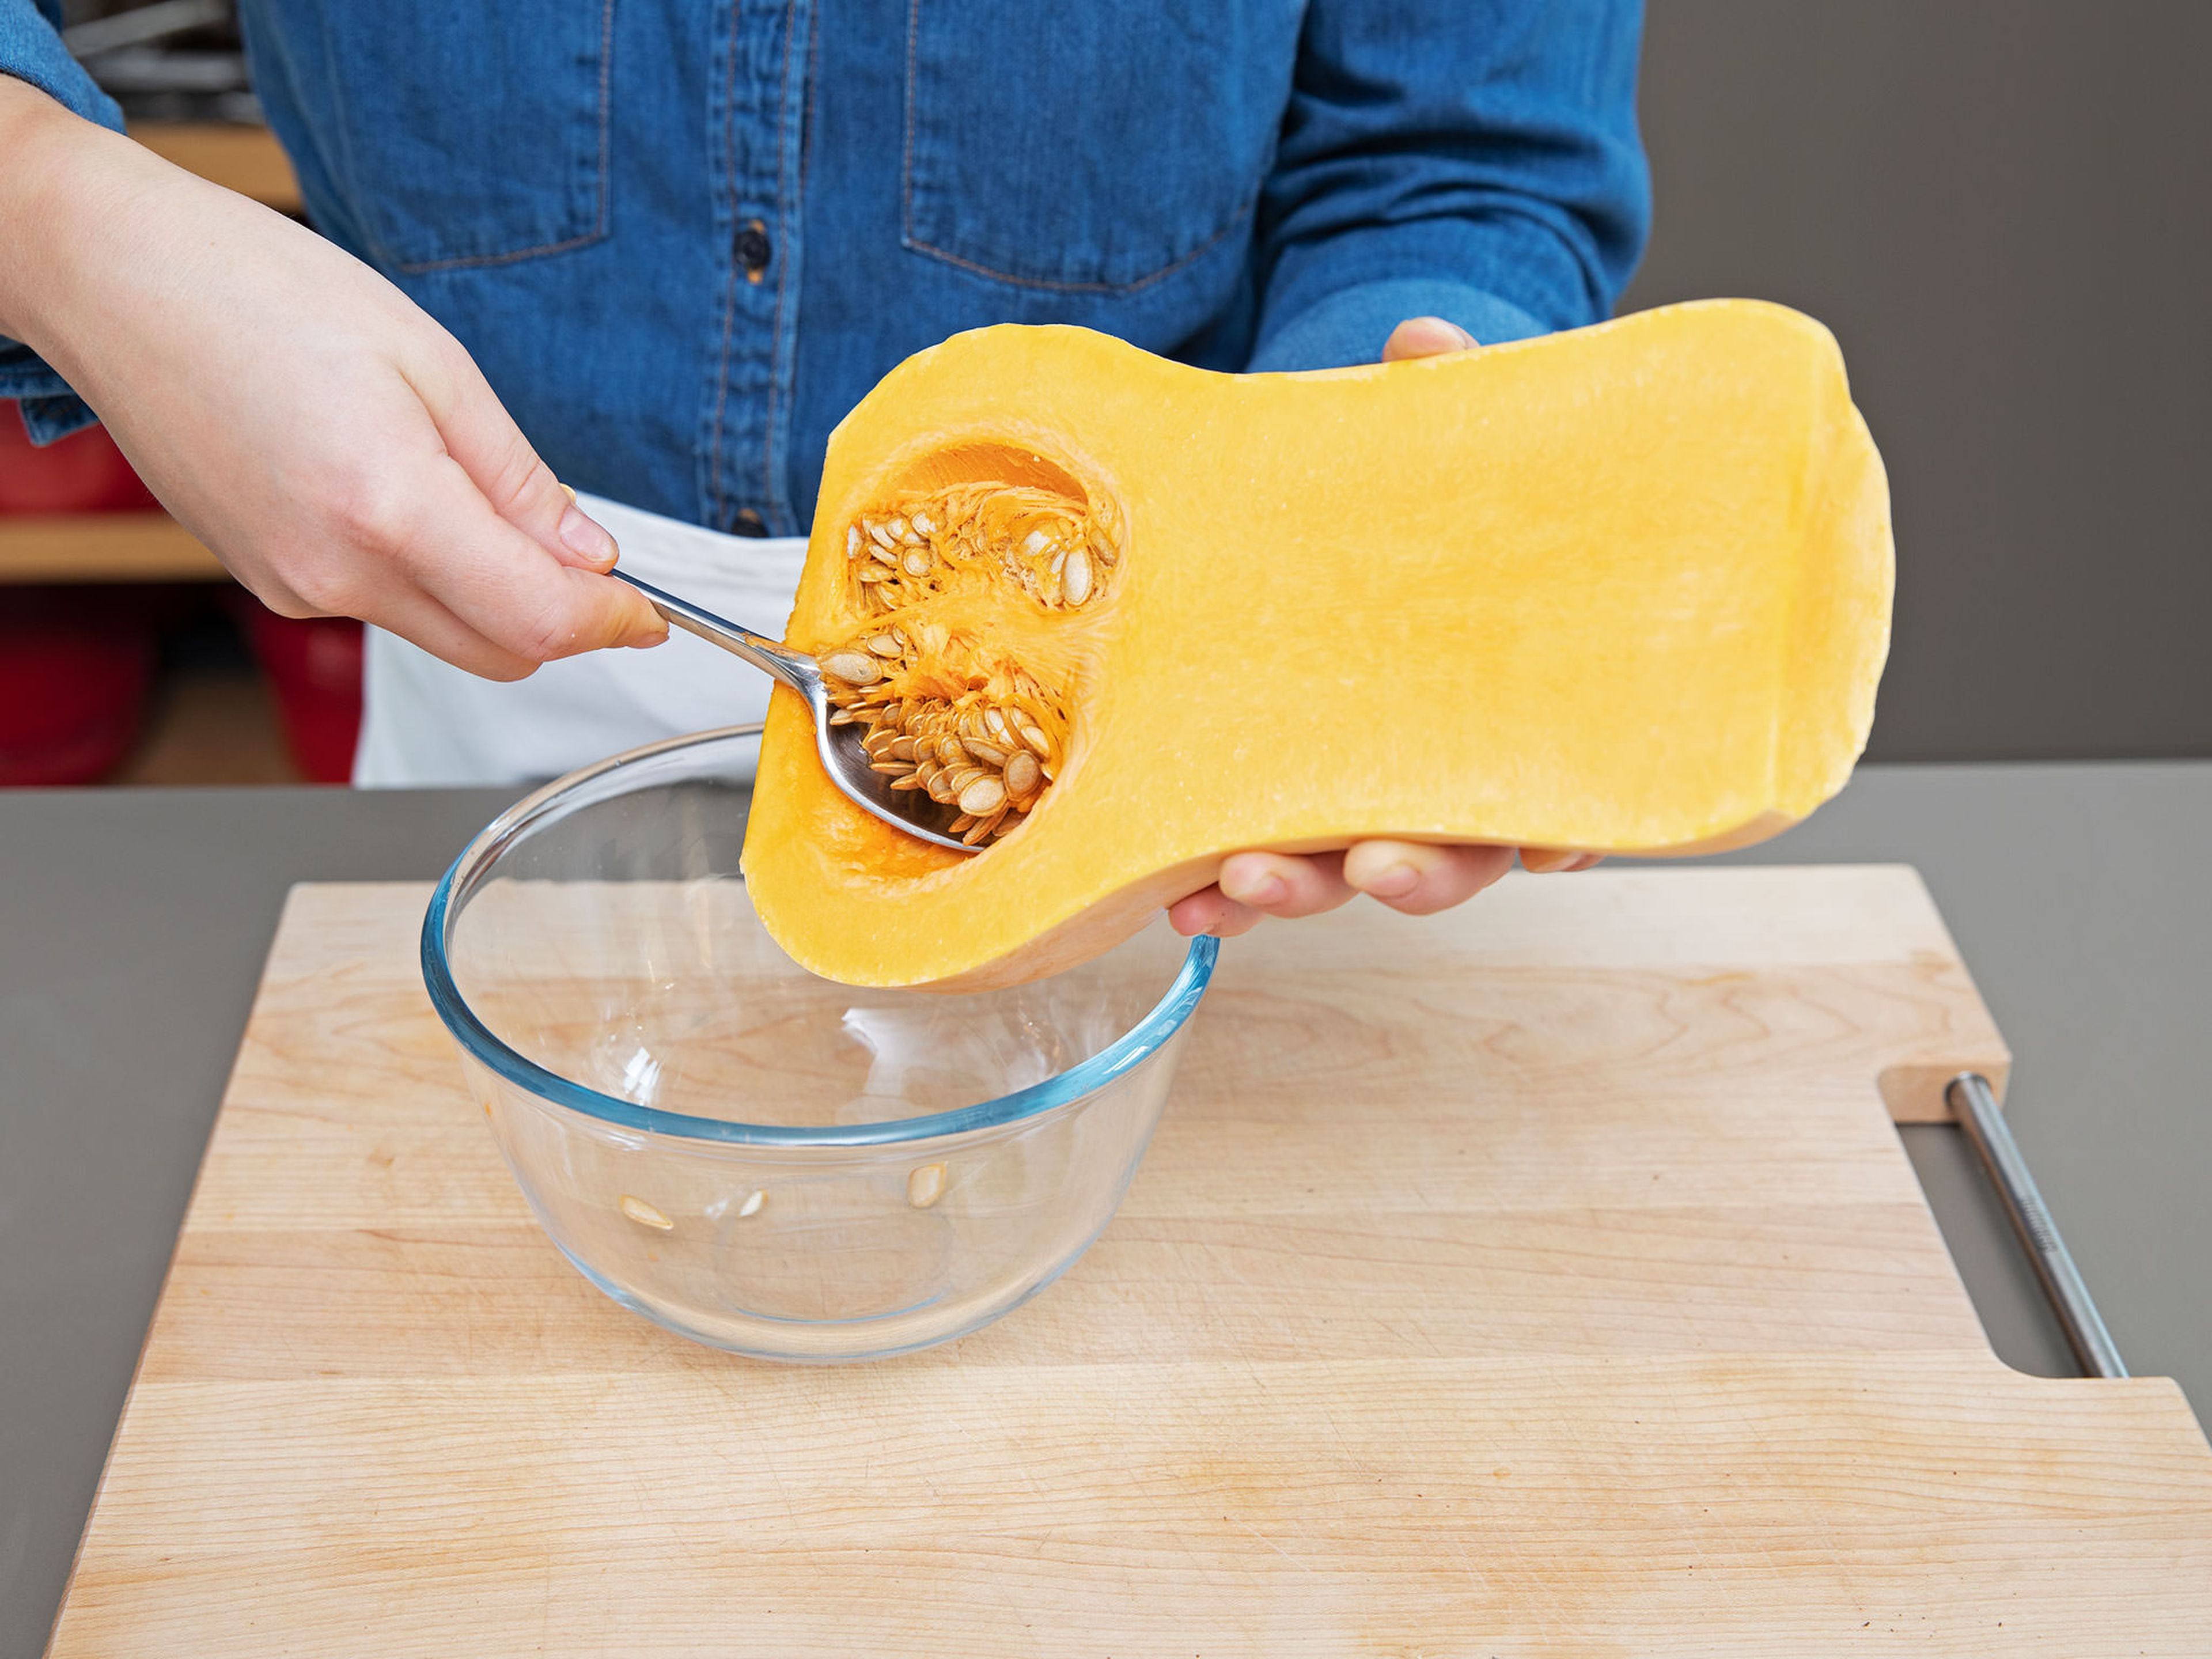 Backofen auf 200°C vorheizen. Butternusskürbis falls gewünscht schälen, halbieren und die Kerne entfernen.